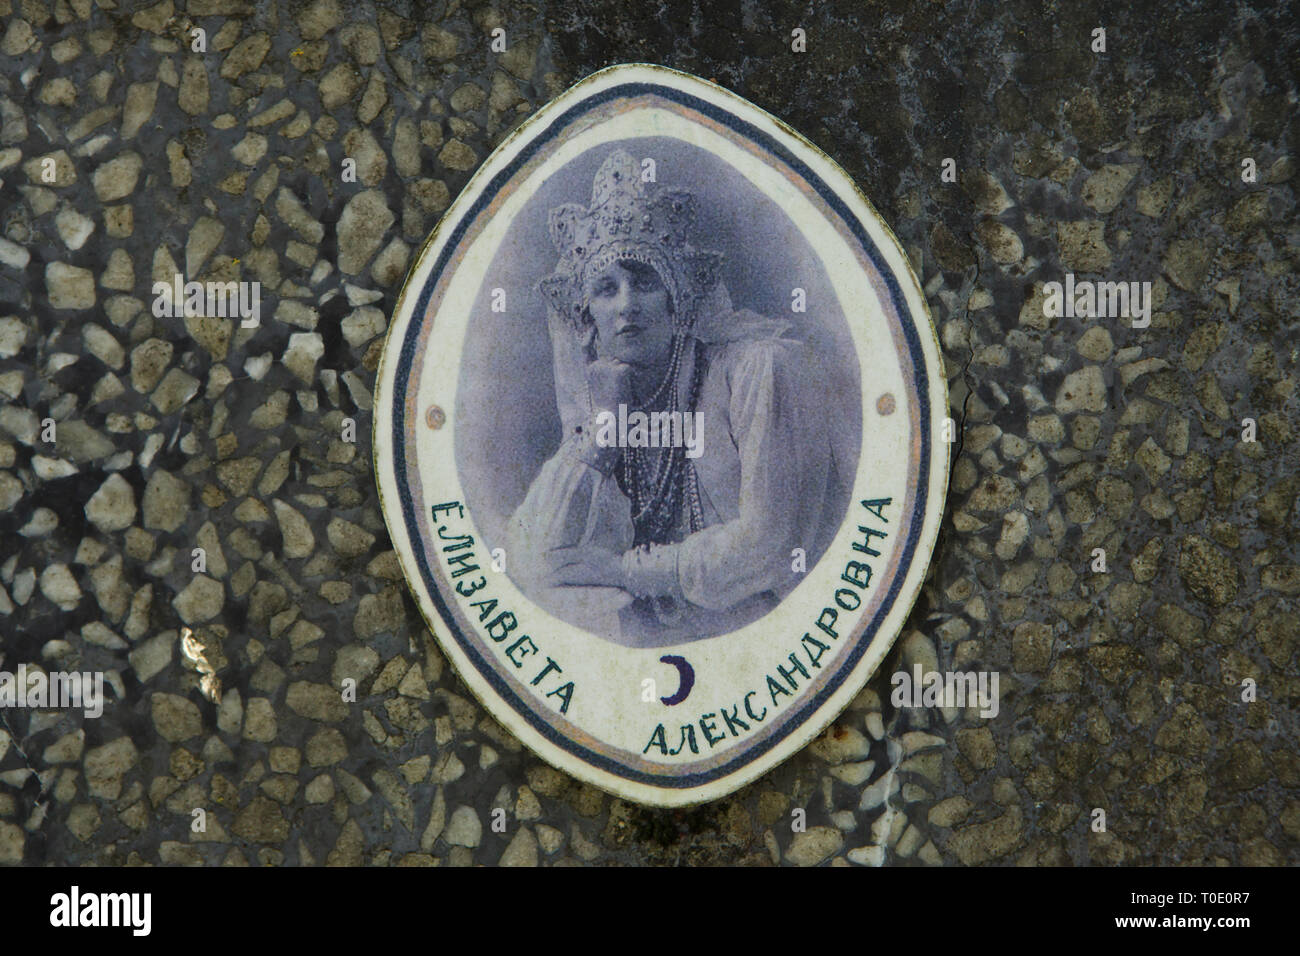 Photographie d'émigrant russe Dubentseva Yelizaveta sur sa pierre tombale au Cimetière Russe de Sainte-Geneviève-des-Bois (Cimetière Russe de Sainte-Geneviève-des-Bois) près de Paris, France. Yelizaveta Dubentseva, née Antonovskaya, est né le 22 octobre 1901, a quitté la Russie à l'âge de 20 ans, a passé plus d'un demi-siècle en exil et mourut à l'âge de 81 le 30 septembre 1983. Yelizaveta Dubentseva est représenté vêtu d'une coiffe traditionnelle russe appelé kokoshnik. Banque D'Images